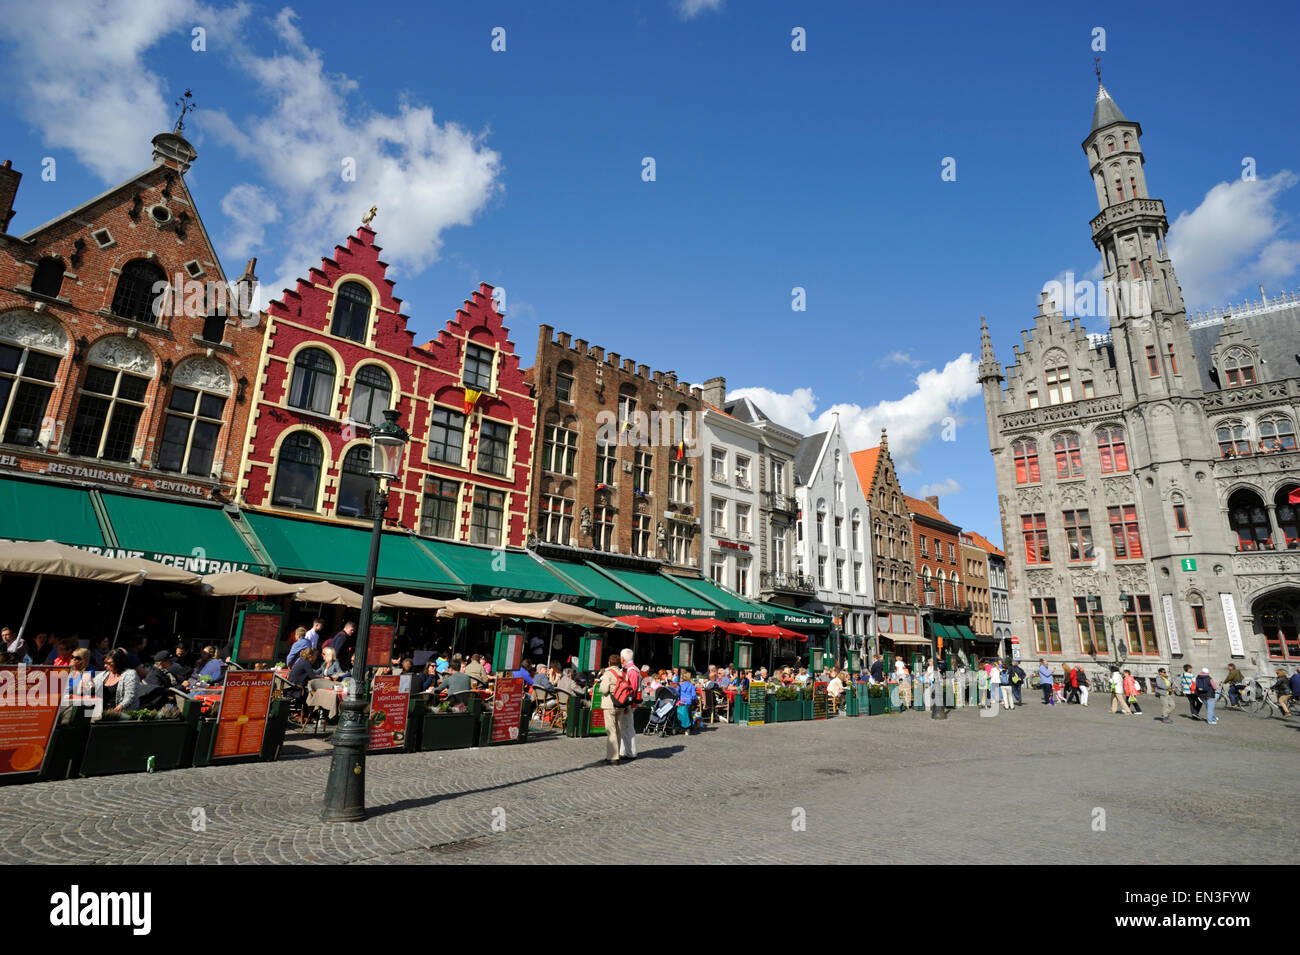 Bélgica, brujas, el Markt, la plaza del mercado Foto de stock